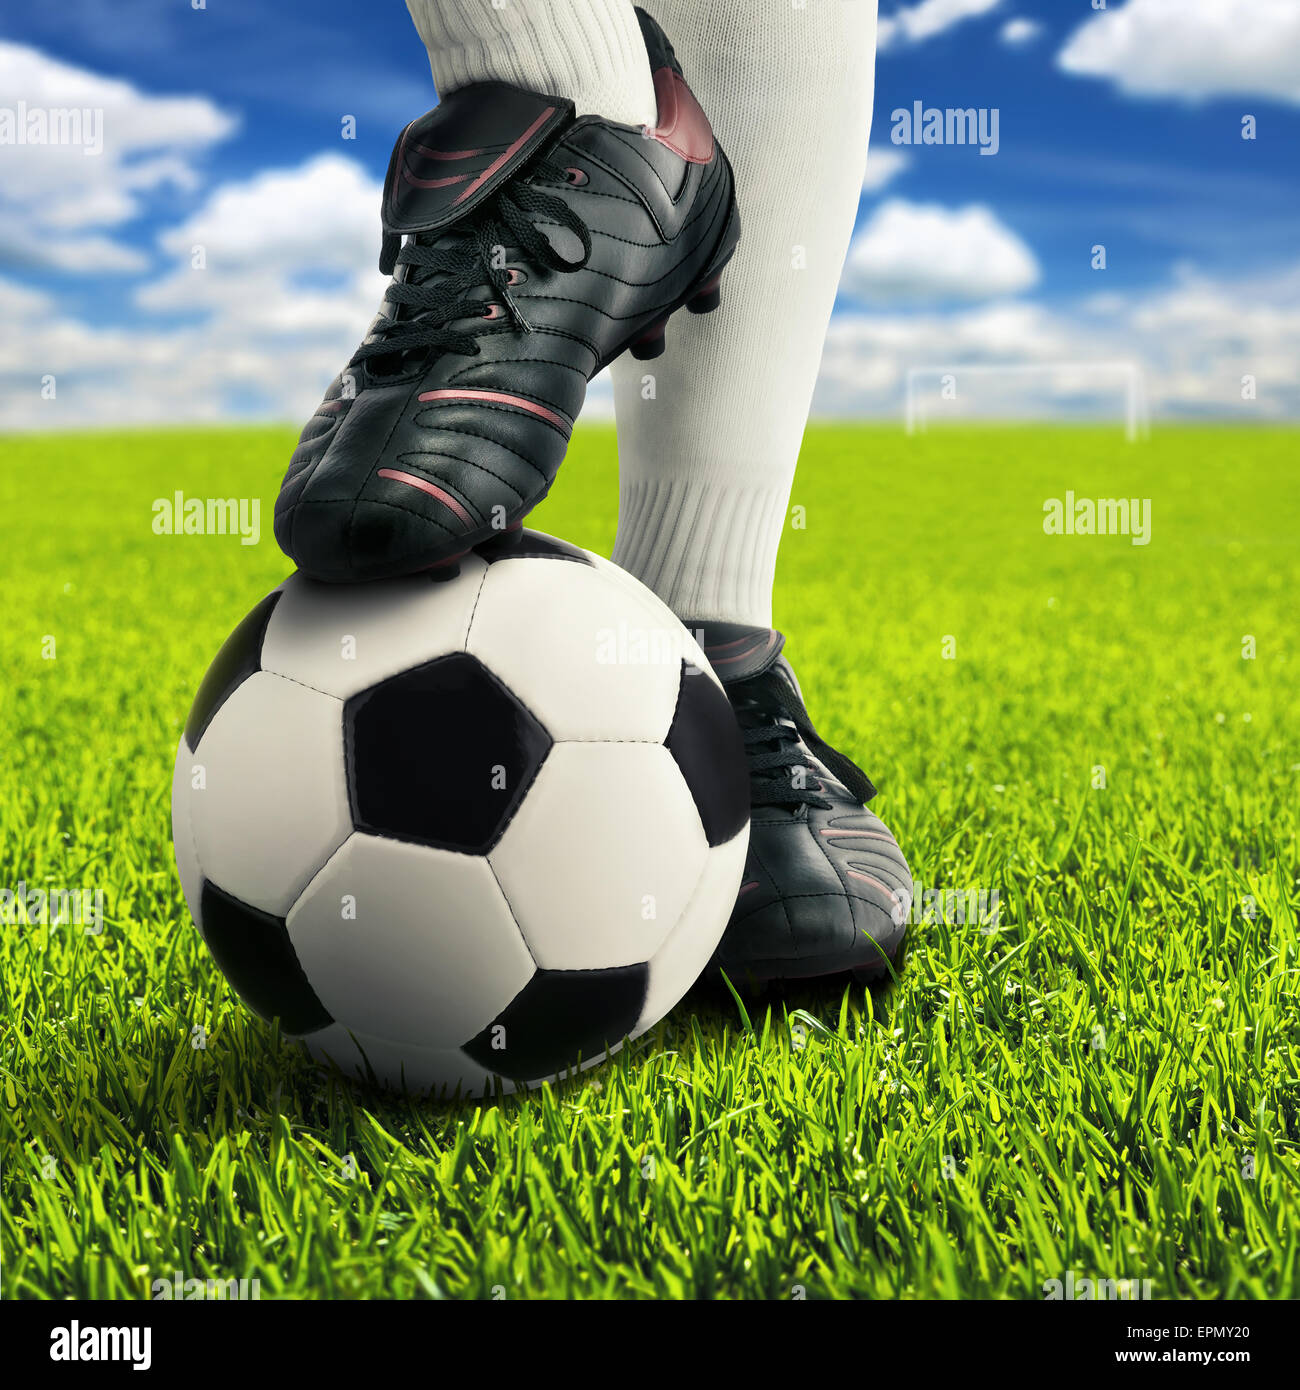 Los pies del jugador de fútbol en pose casual en un campo de juego abierto, con el cielo de fondo Foto de stock